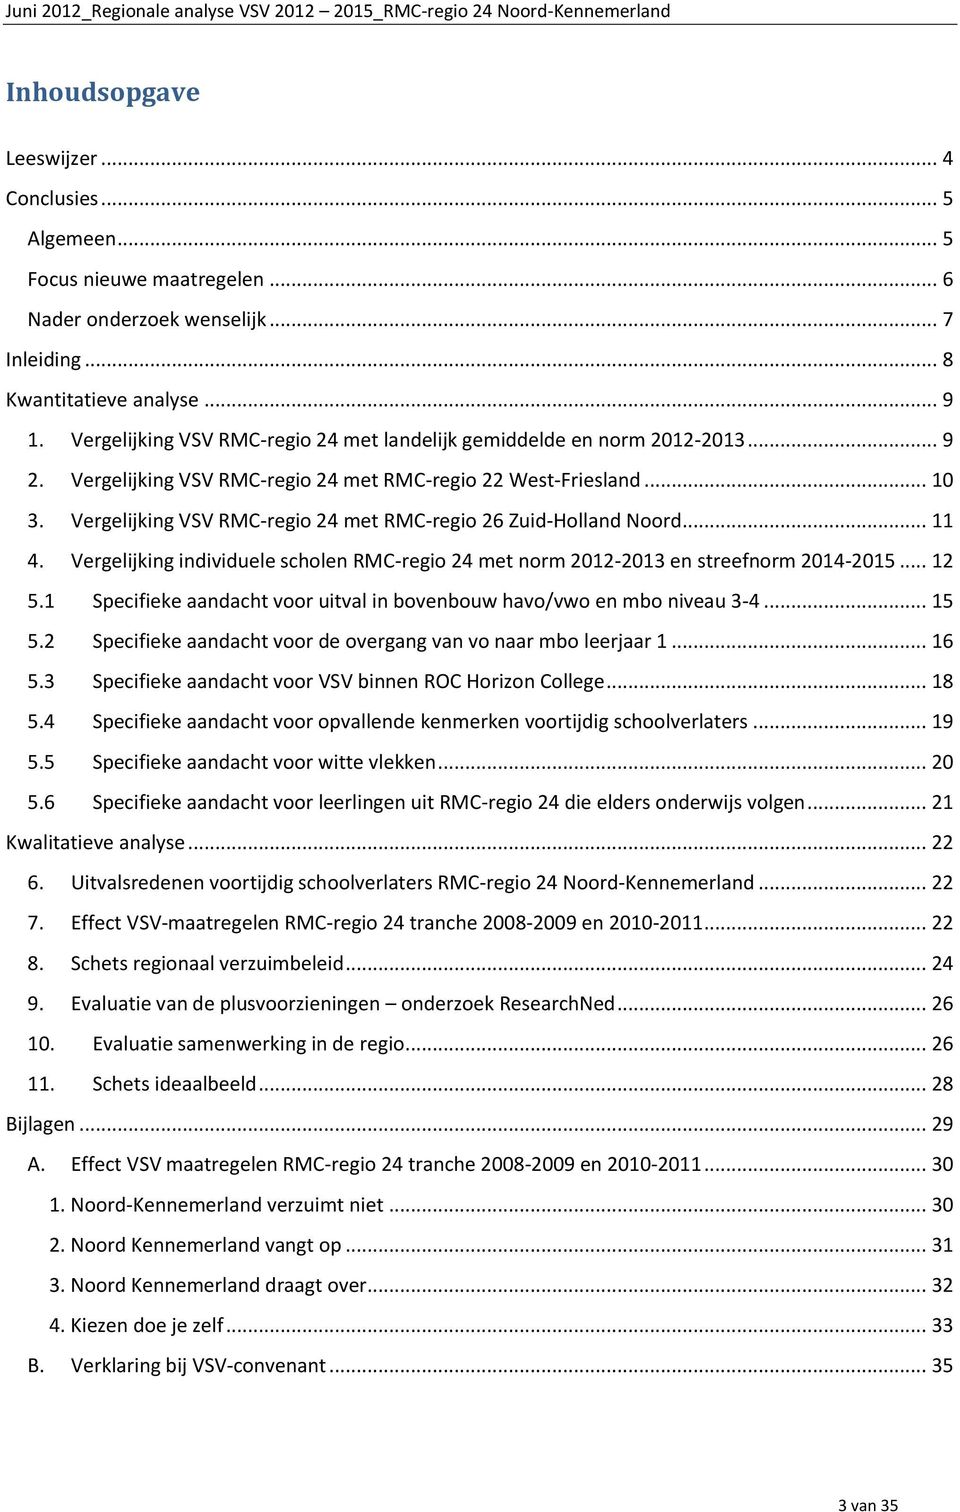 Vergelijking VSV RMC-regio 24 met RMC-regio 26 Zuid-Holland Noord... 11 4. Vergelijking individuele scholen RMC-regio 24 met norm 2012-2013 en streefnorm 2014-2015... 12 5.